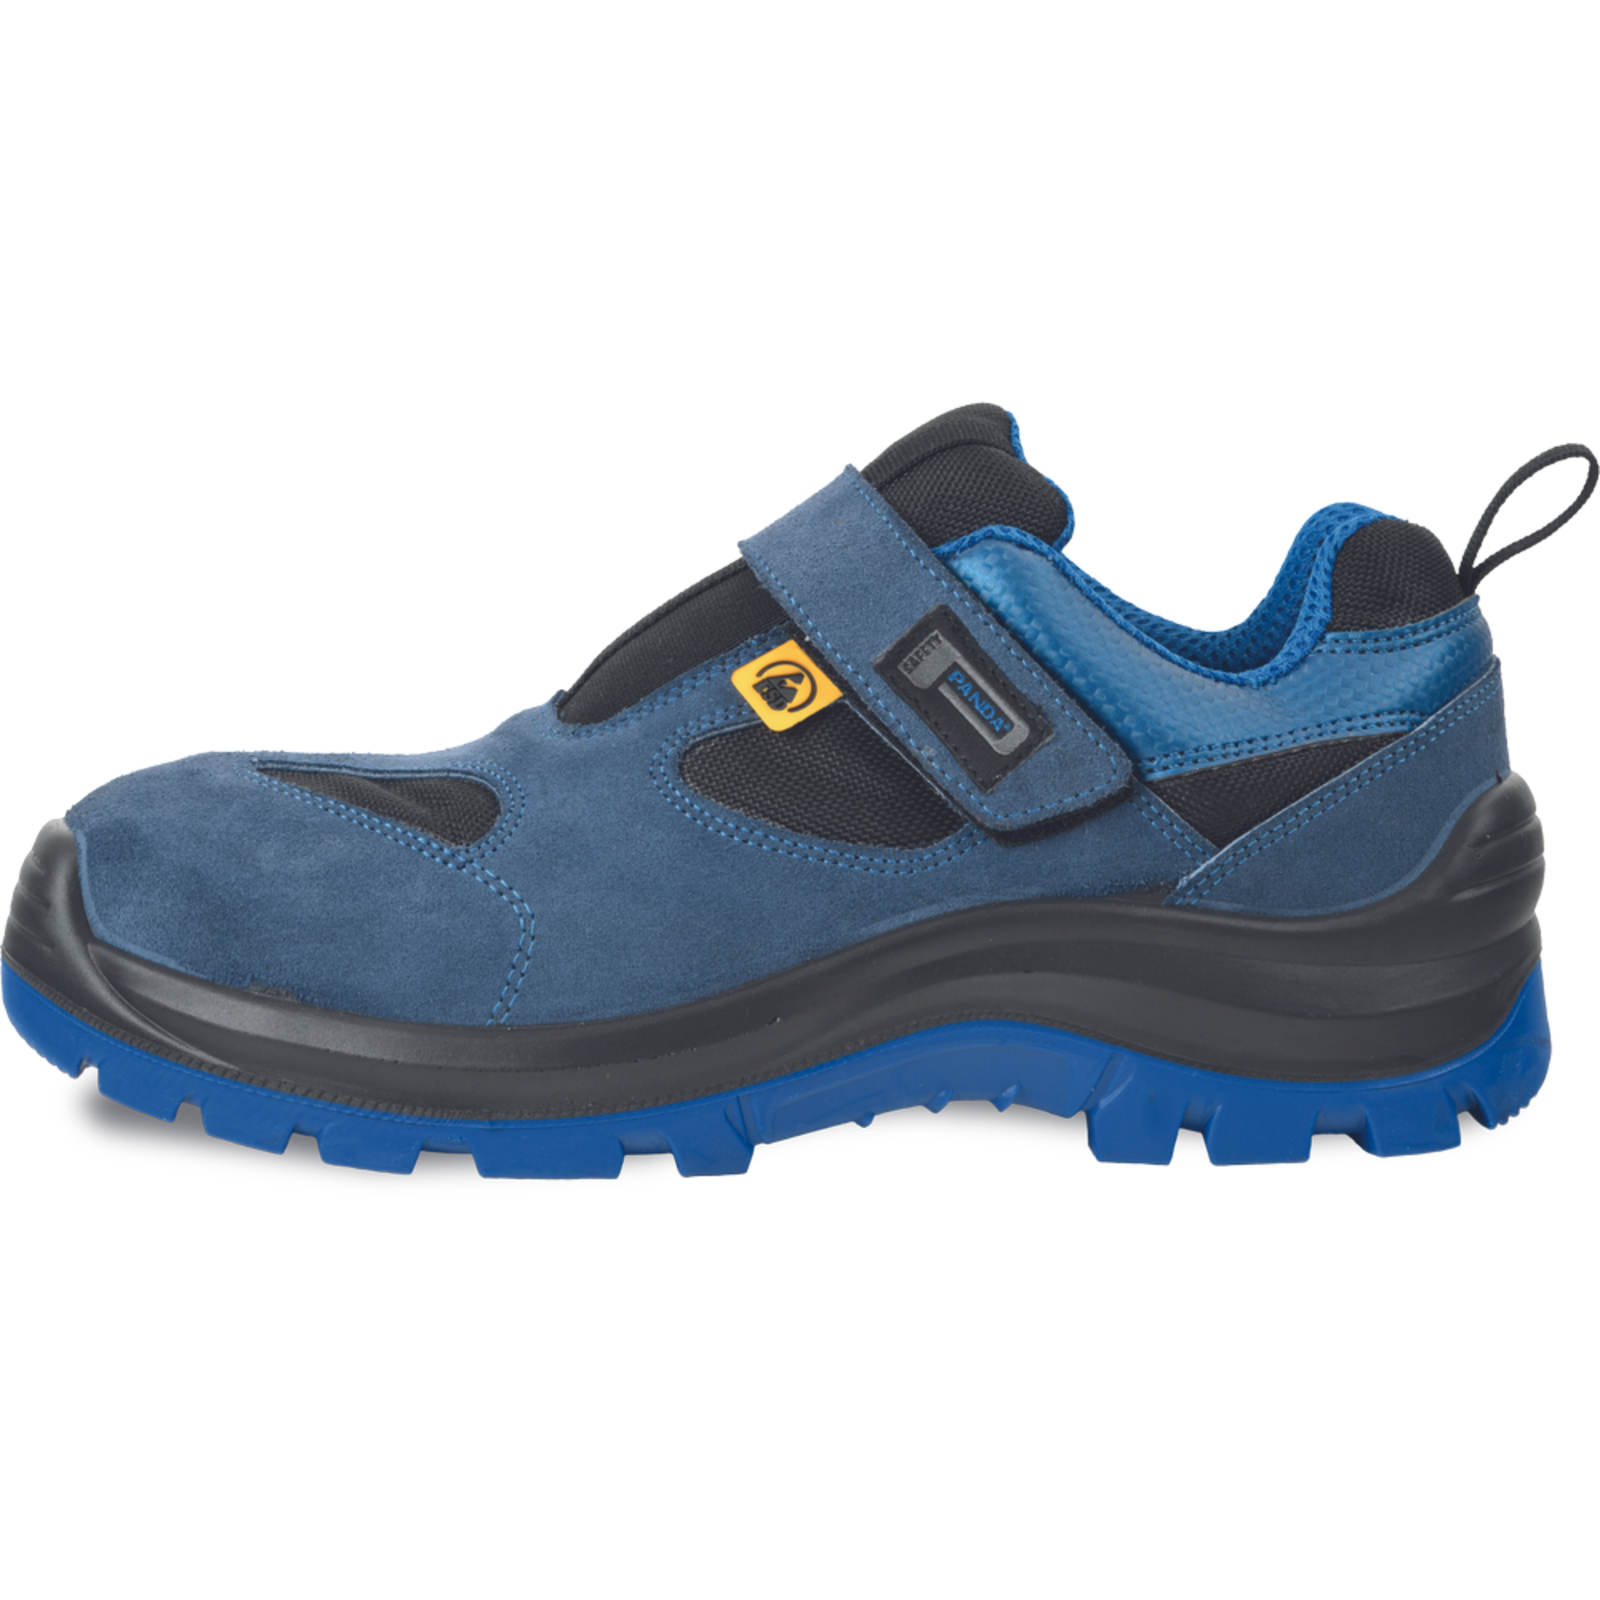 Bezpečnostné pracovné sandále Panda Wilk MF ESD S1P SRC - veľkosť: 40, farba: modrá/čierna